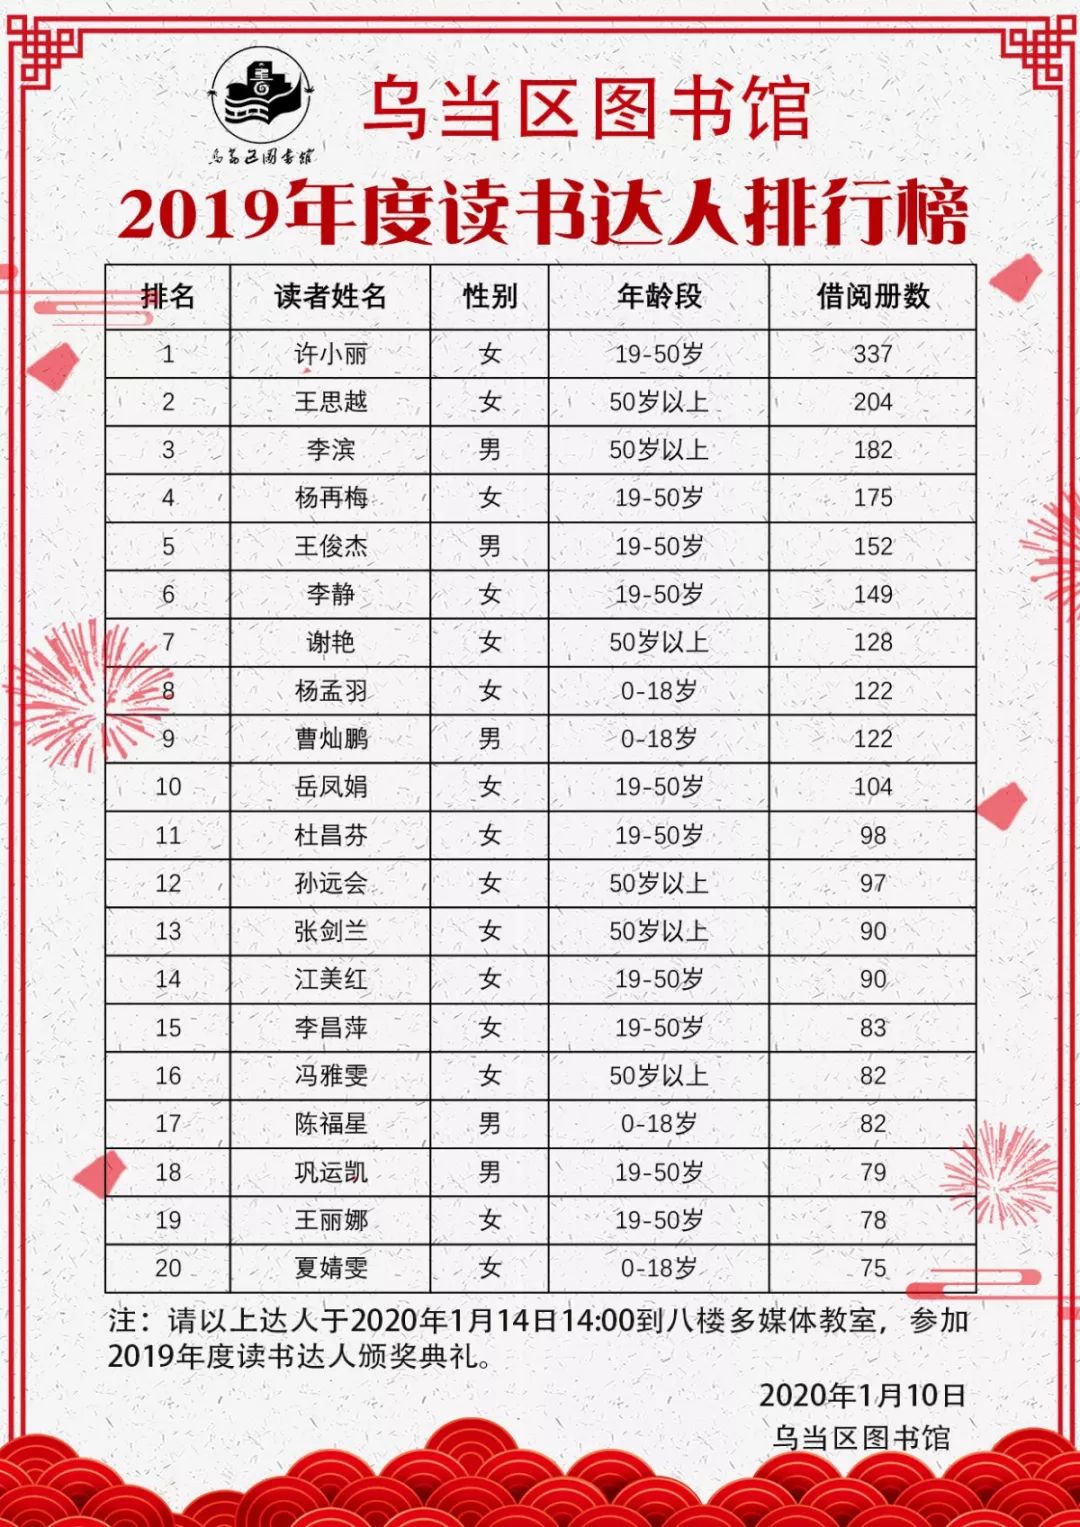 2019读书排行榜_豆瓣2019年度读书榜单